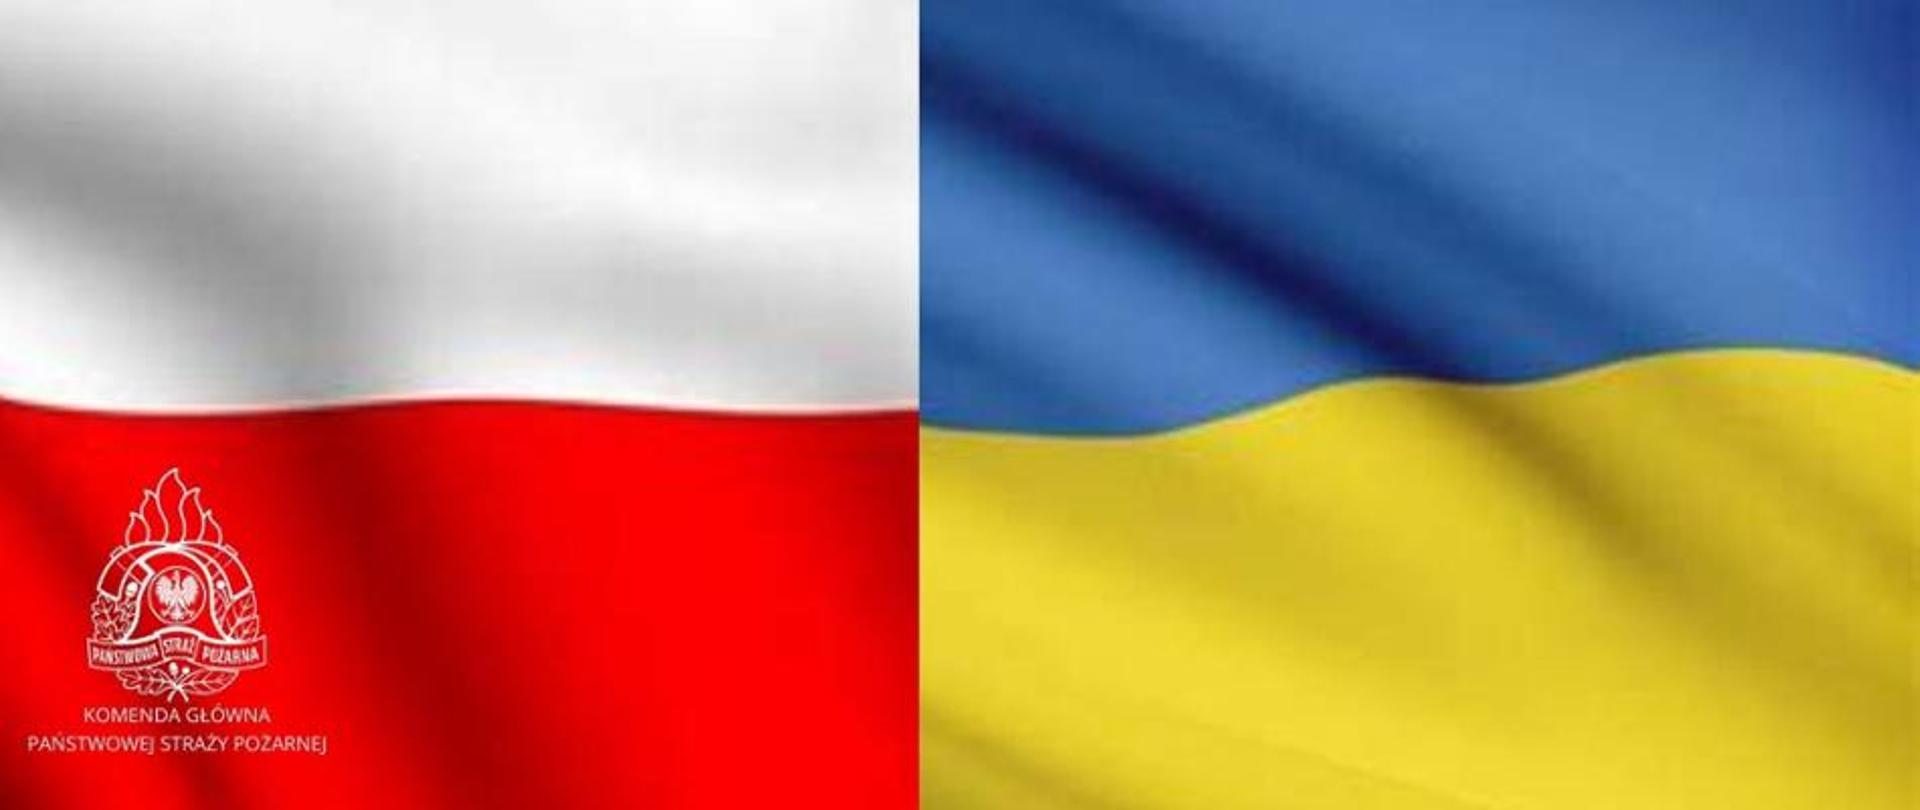 Logotyp przedstawia dwie flagi narodowe: Polską oraz Ukraińską